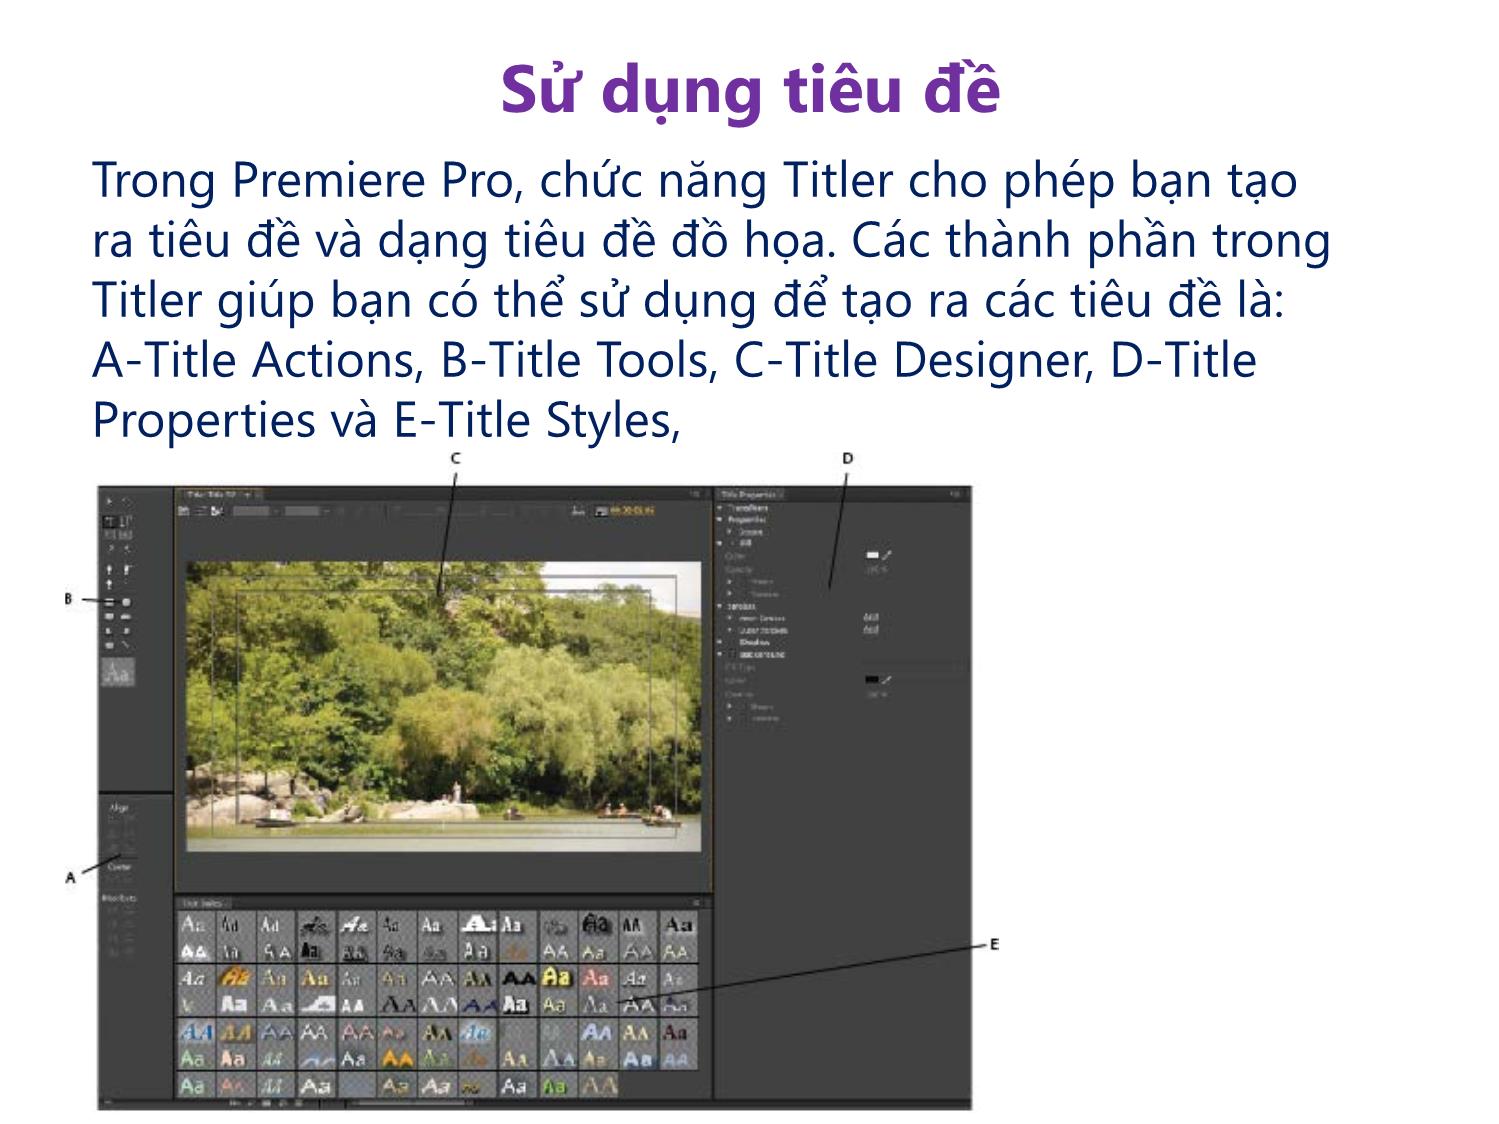 Bài giảng Xử lý hậu kỳ với Adobe Premiere Pro Cs6 - Bài 3: Làm việc với các đối tượng đồ họa trang 6